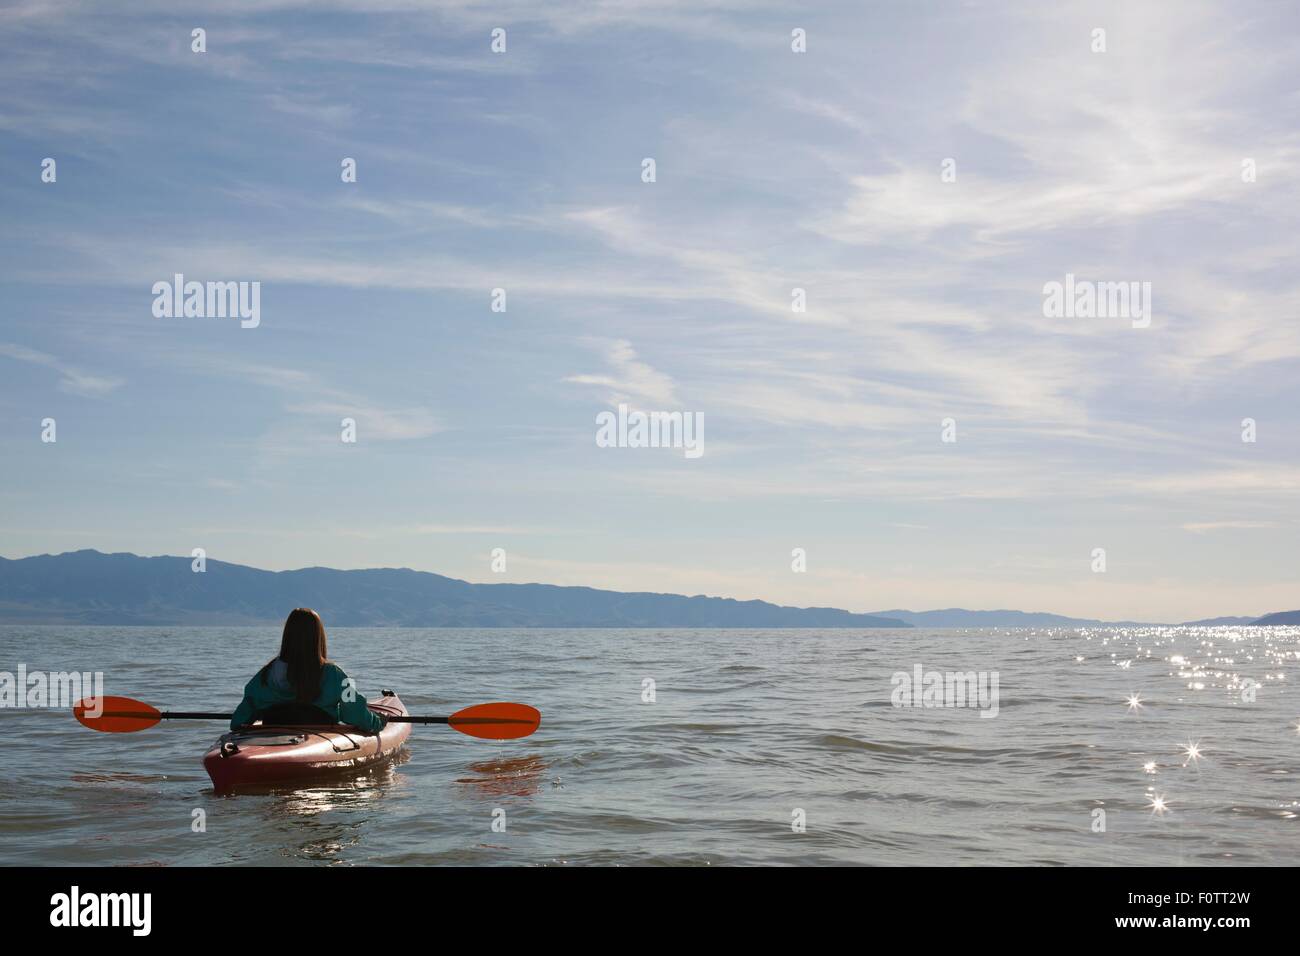 Rear view of young woman kayaker sitting in kayak on water, Great Salt Lake, Utah, USA Stock Photo